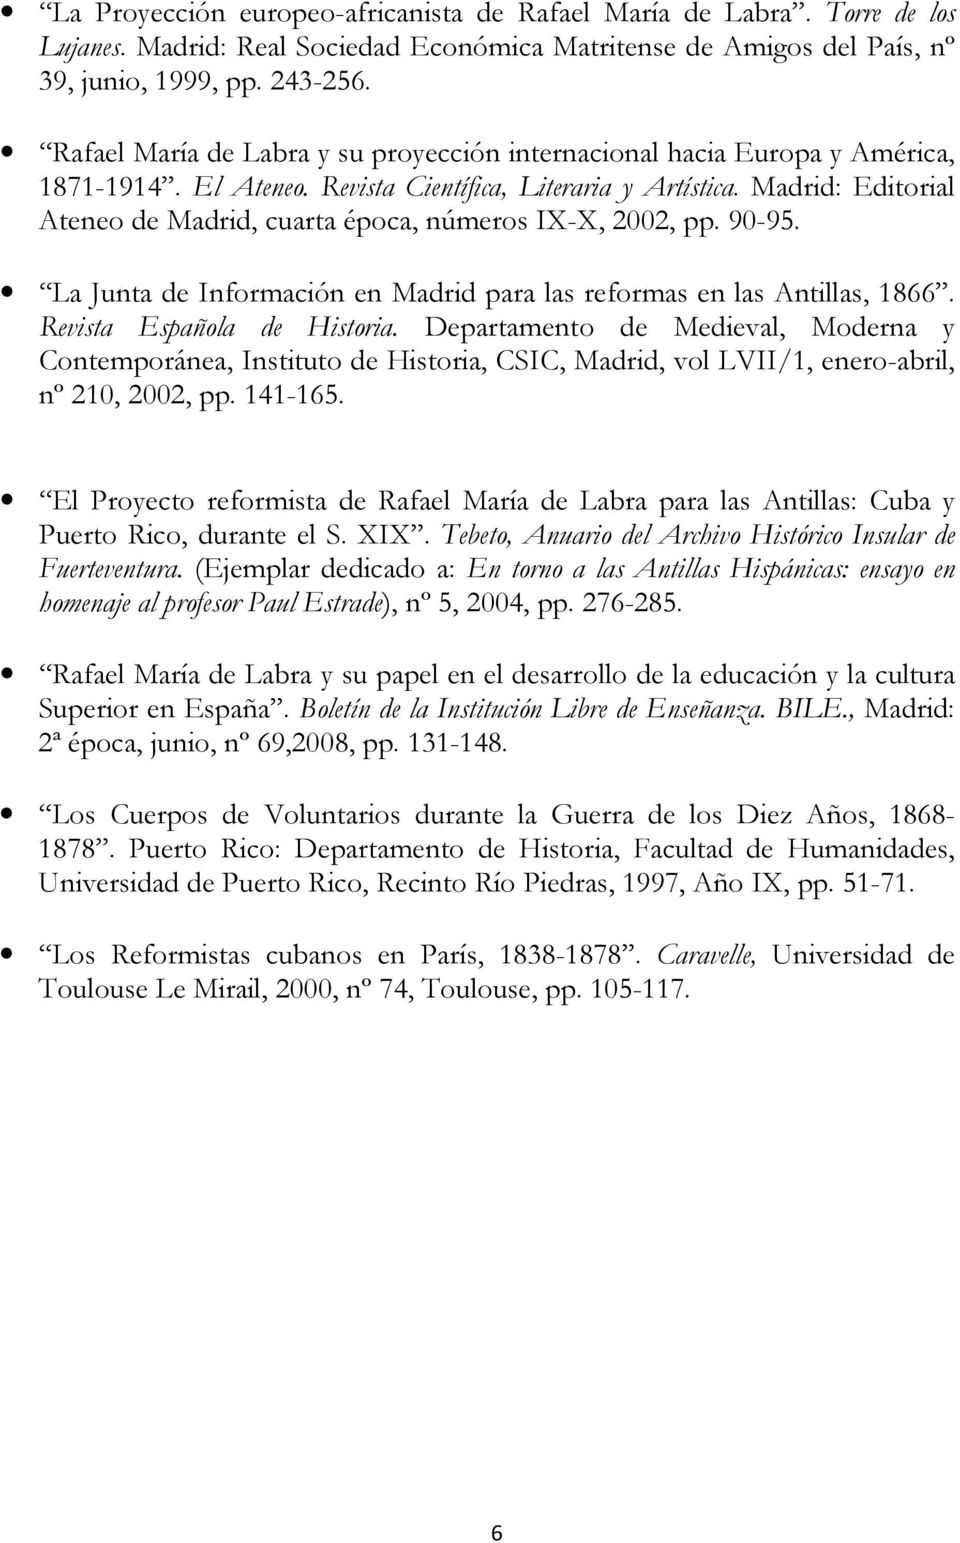 Madrid: Editorial Ateneo de Madrid, cuarta época, números IX-X, 2002, pp. 90-95. La Junta de Información en Madrid para las reformas en las Antillas, 1866. Revista Española de Historia.